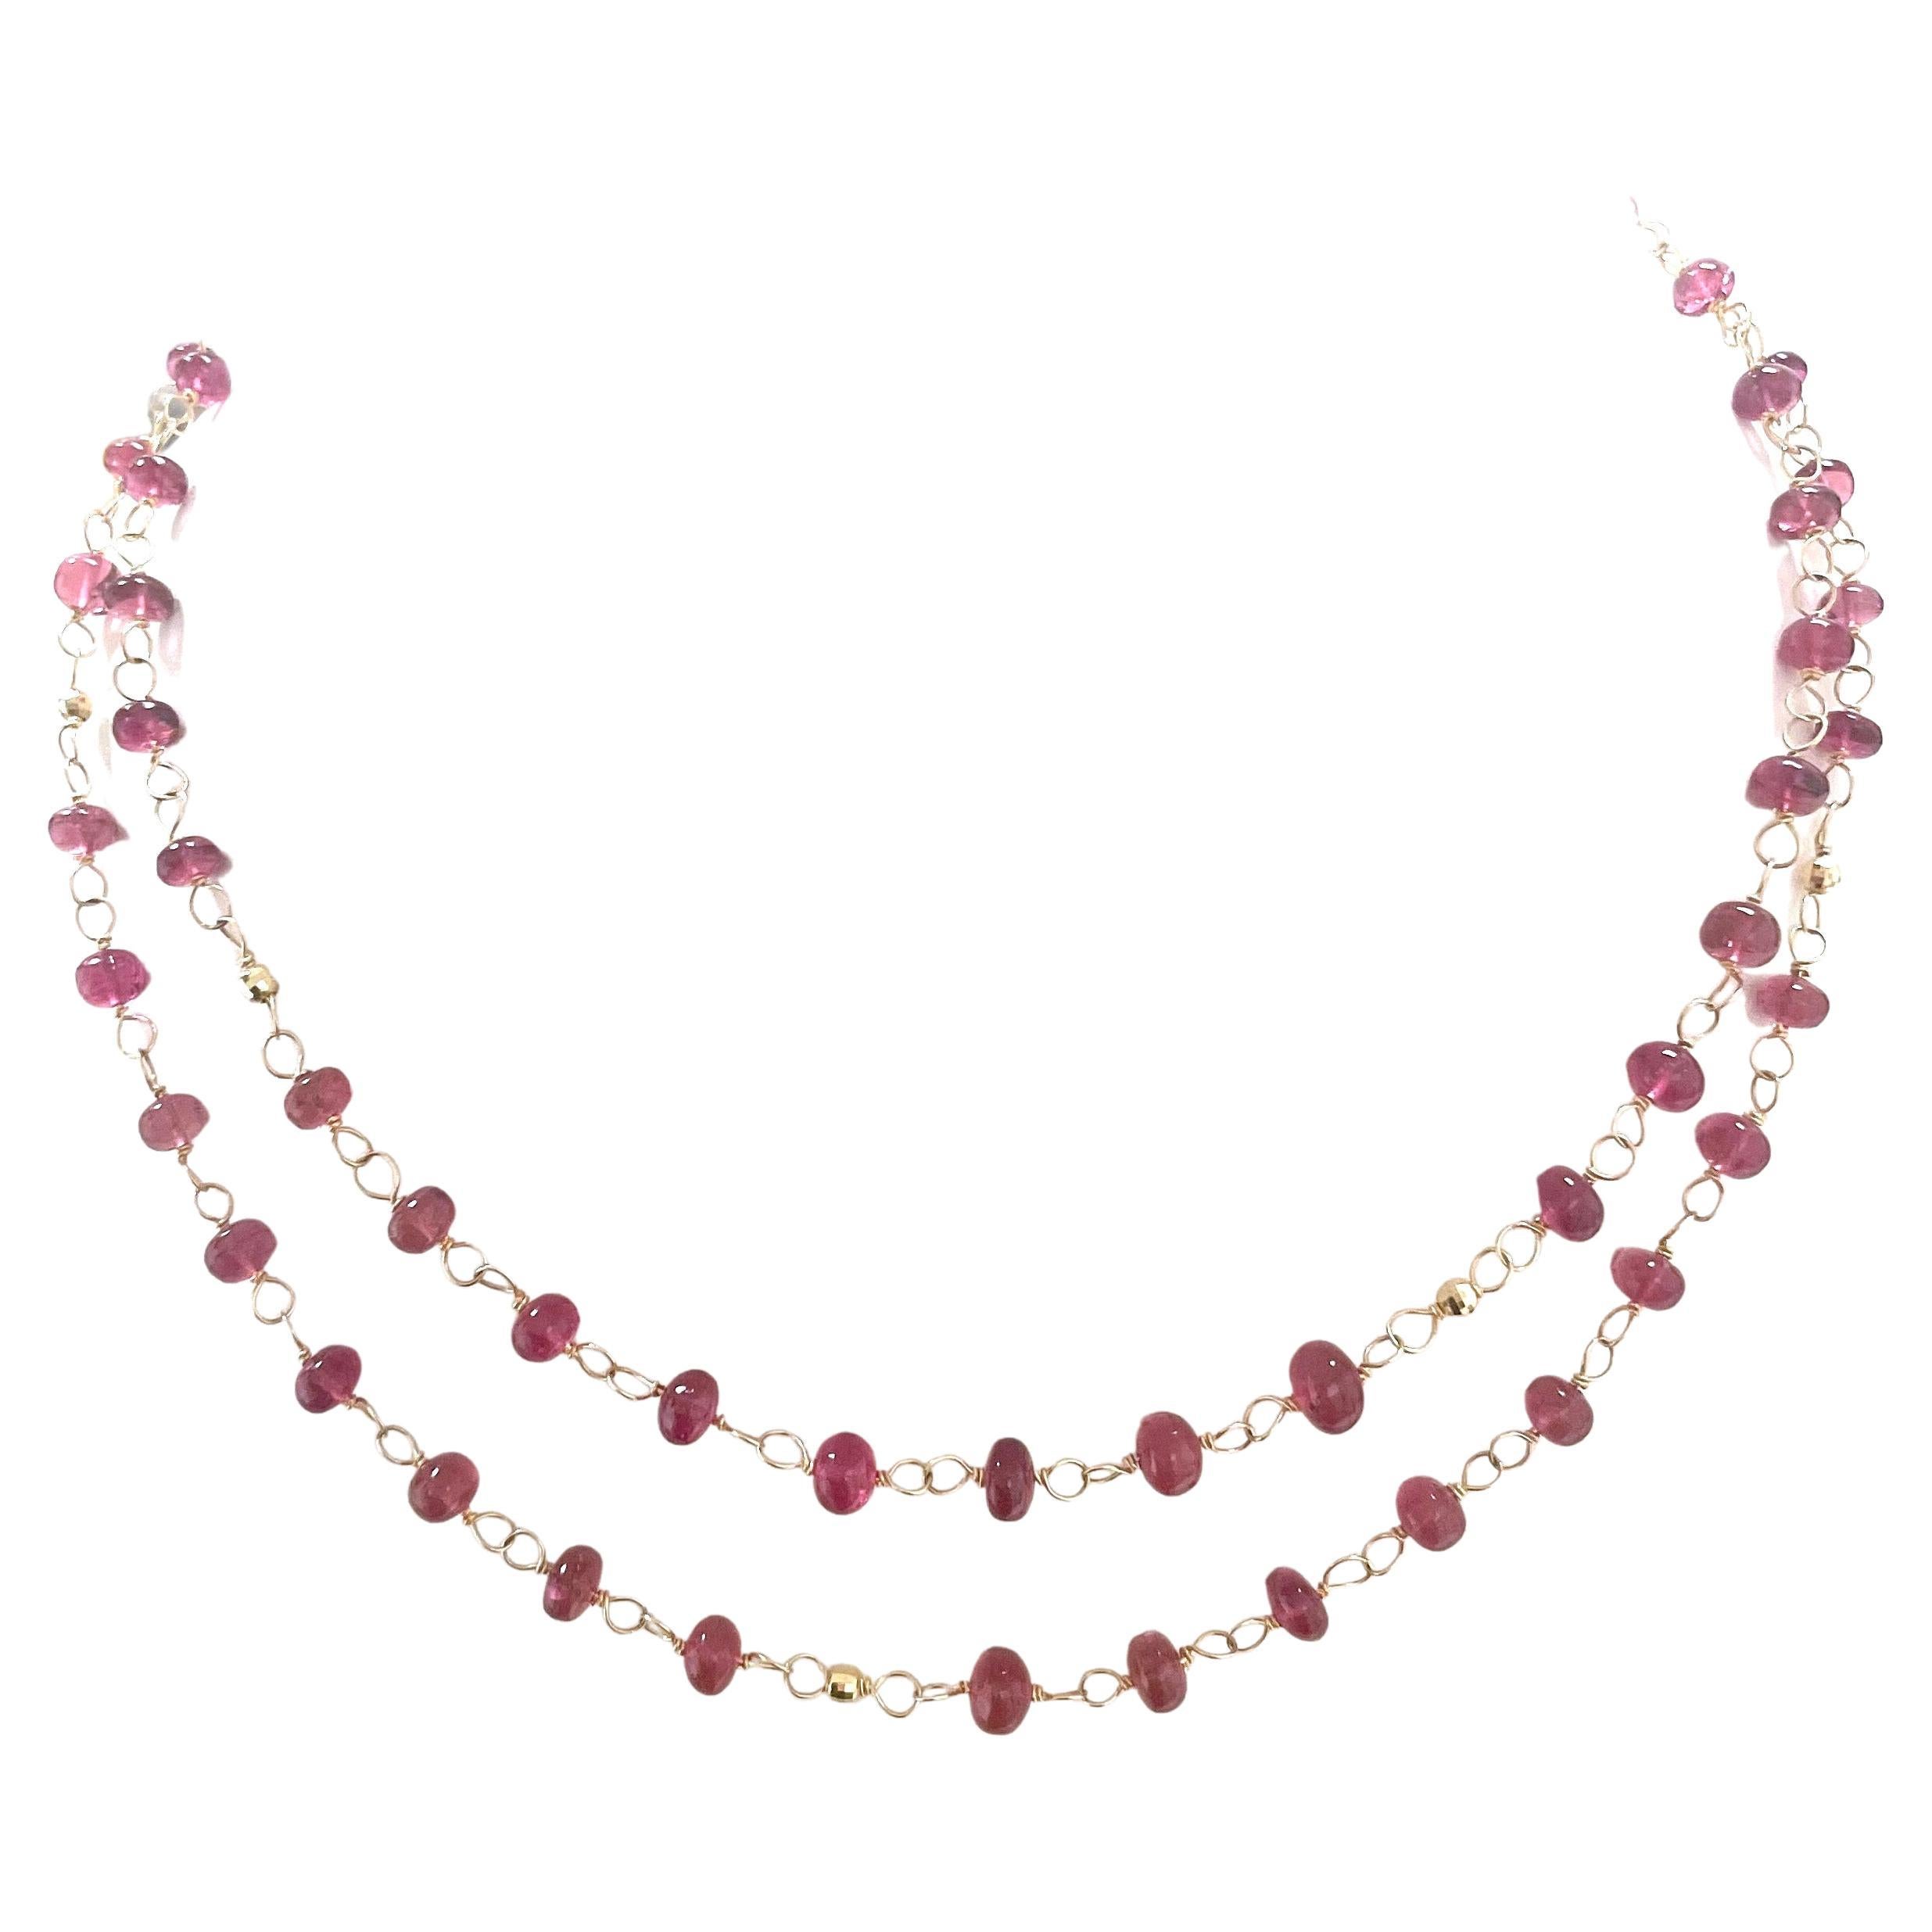 Beschreibung
Die außergewöhnliche Qualität, Klarheit und Farbe jedes einzelnen rosafarbenen Turmalinsteins in der Halskette unterstreicht seine Schönheit und verleiht der Trägerin ein außergewöhnliches Aussehen. 
Die Halskette kann lang oder kurz